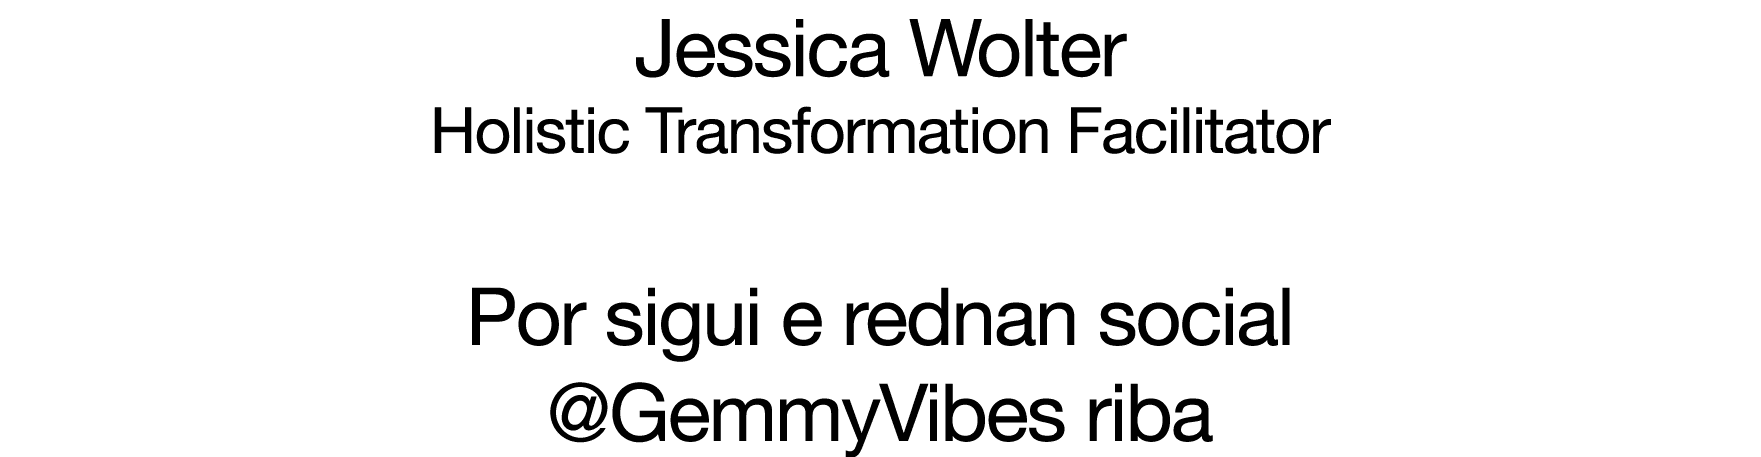 Jessica Wolter  Holistic Transformation Facilitator  Por sigui e rednan social  GemmyVibes riba